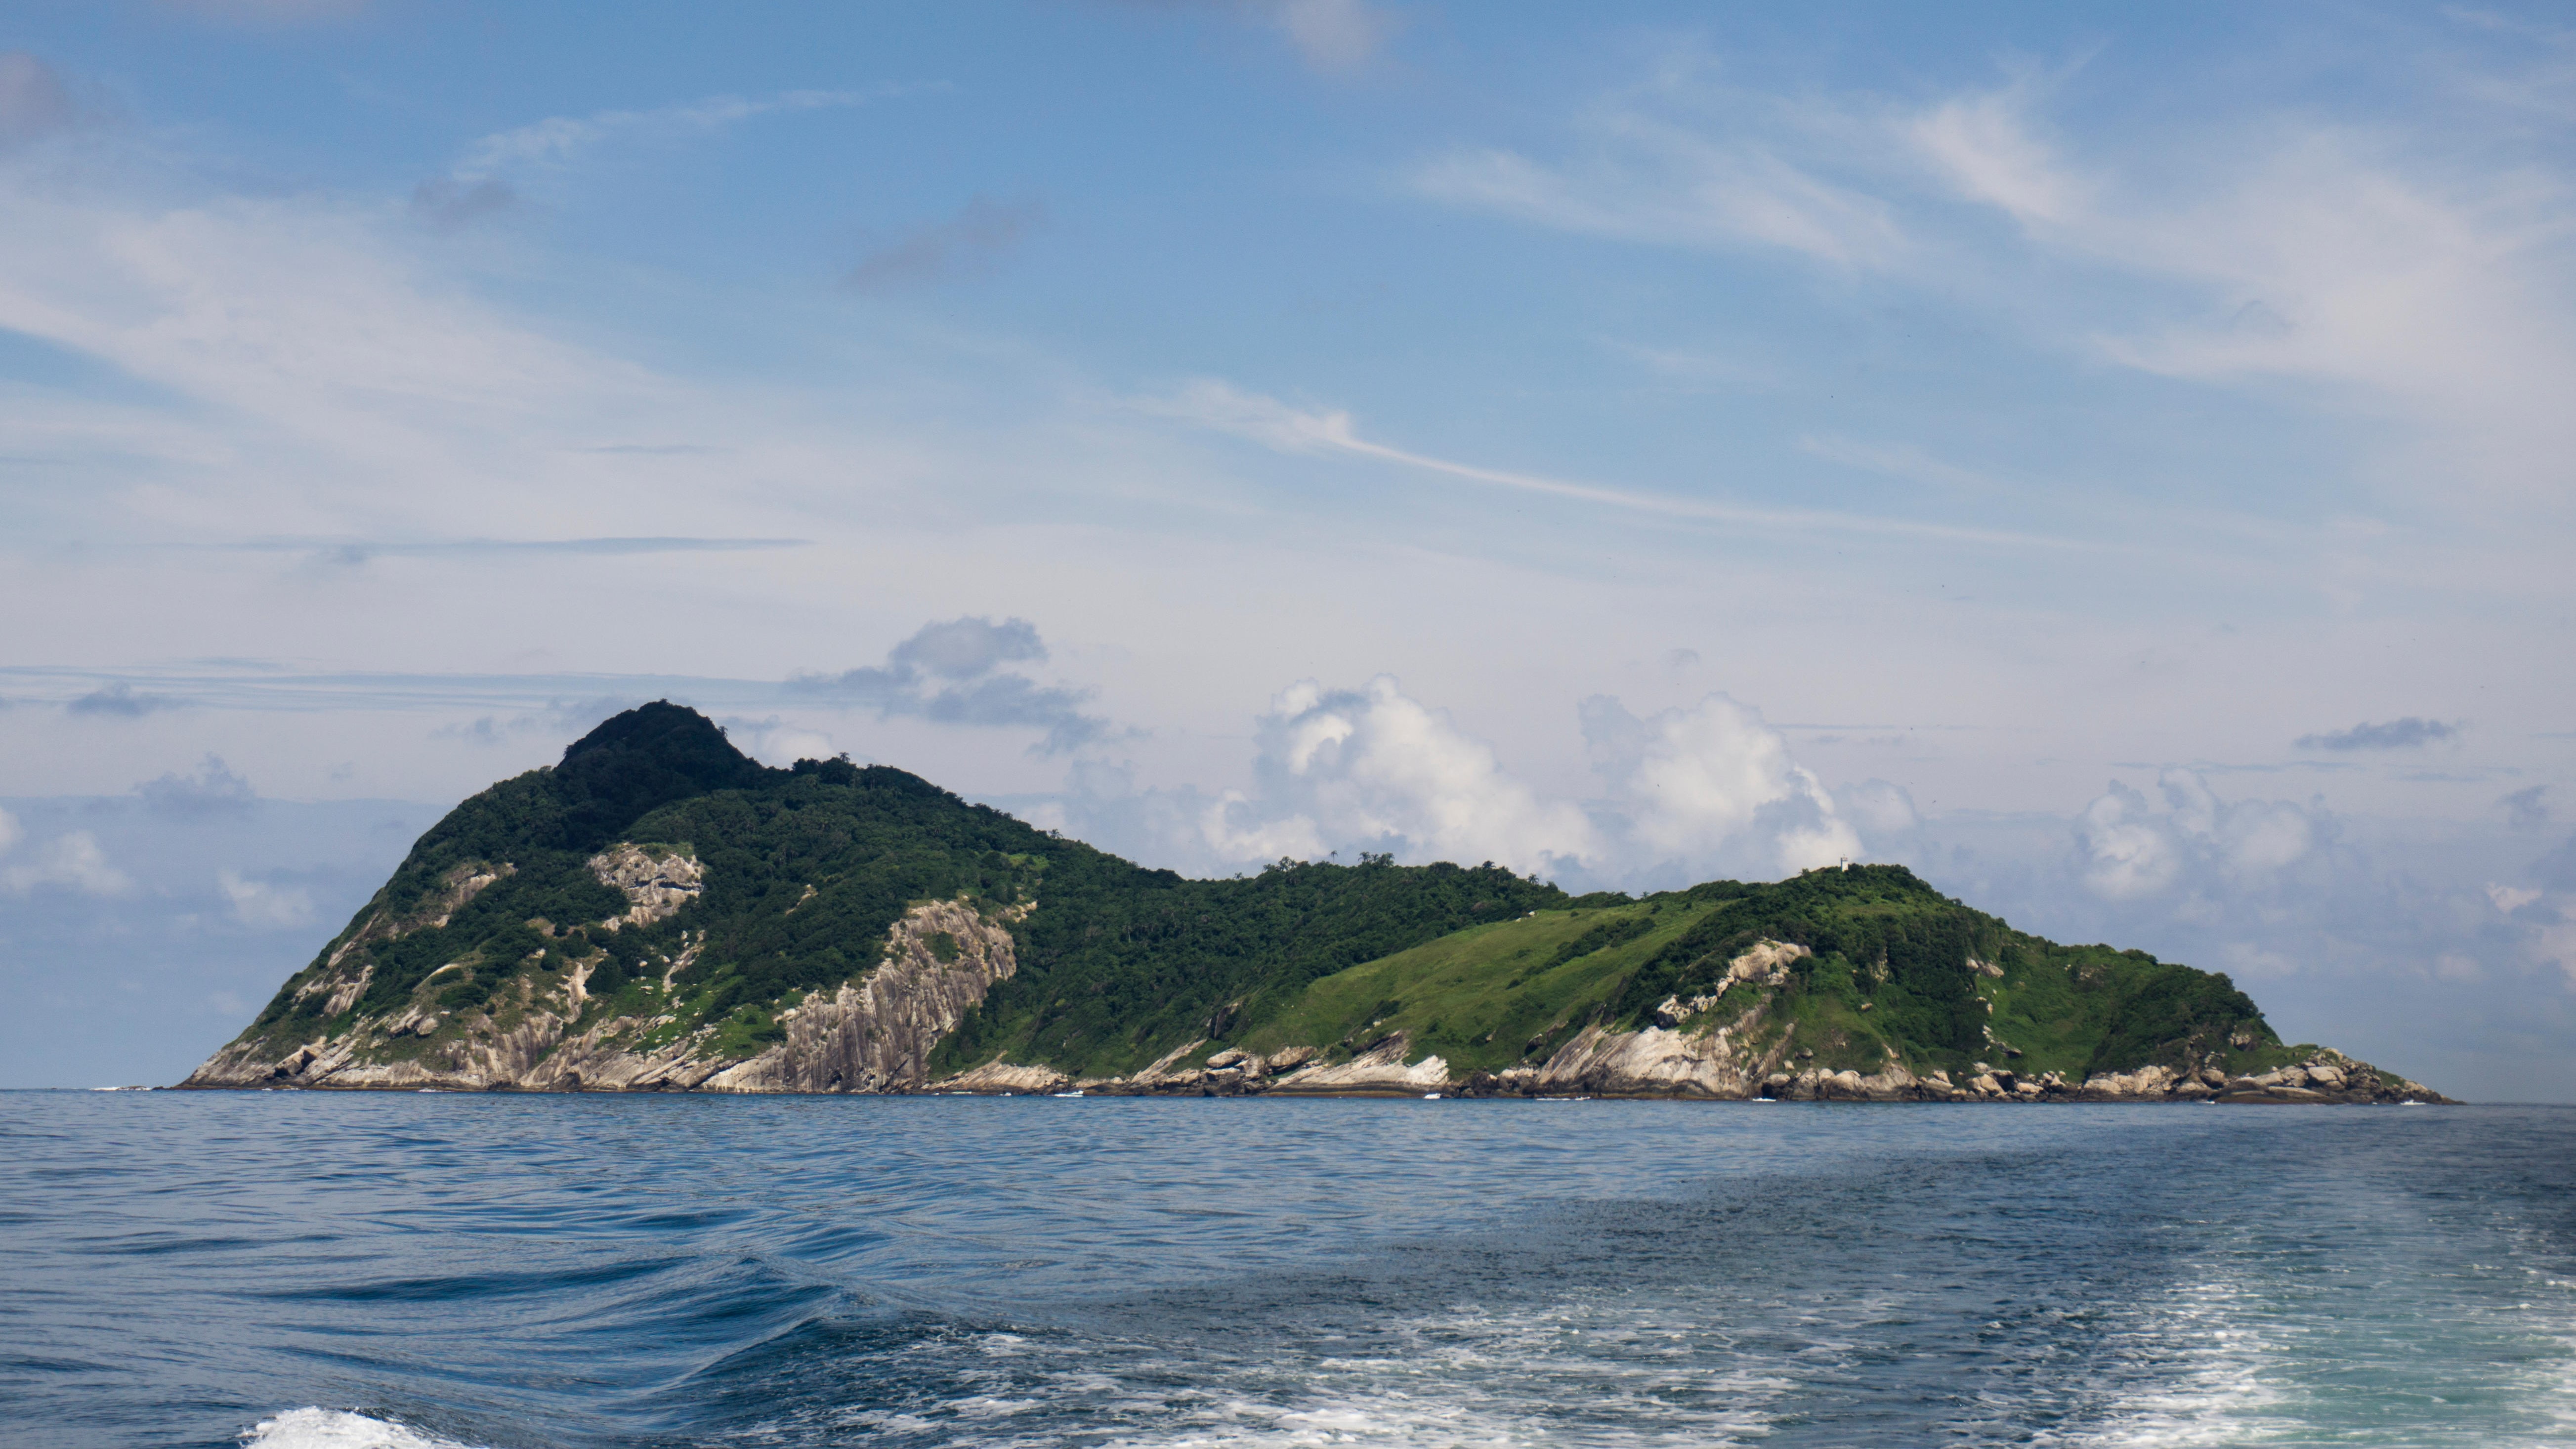 Uma foto da Ilha das Cobras tirada de um barco no Oceano Atlântico. A ilha tem um terreno variável de florestas, pastagens e rochas áridas.